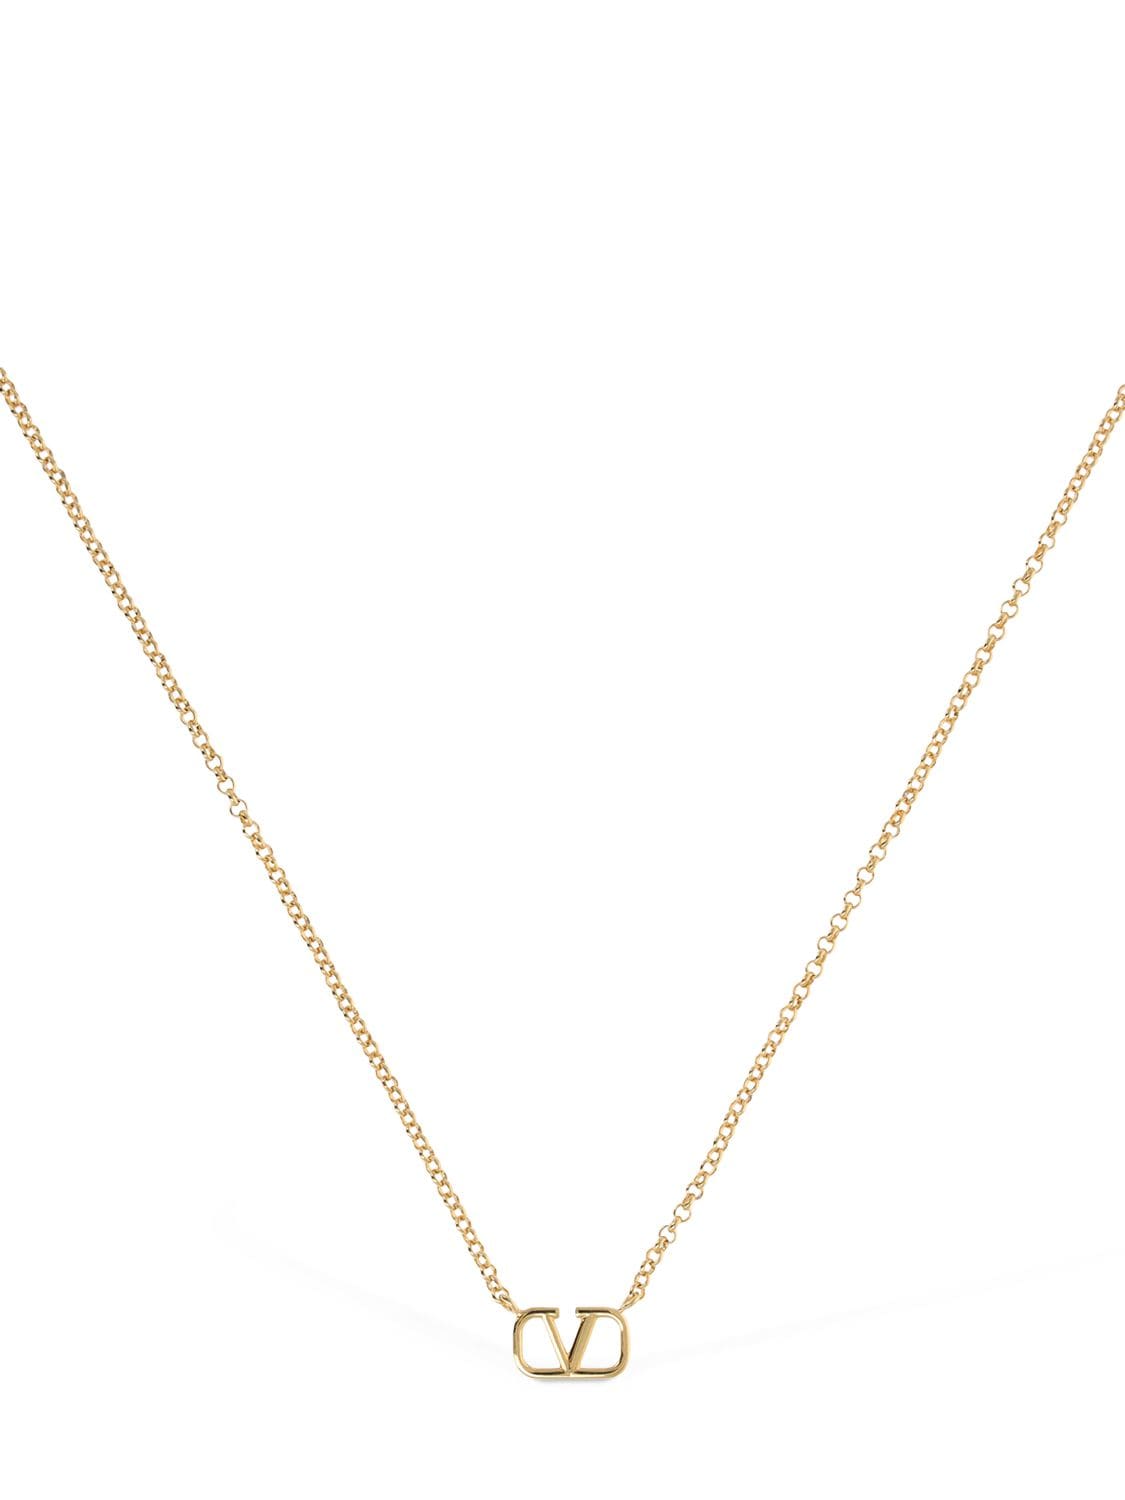 Valentino Garavani V Logo Charm Long Necklace In Gold